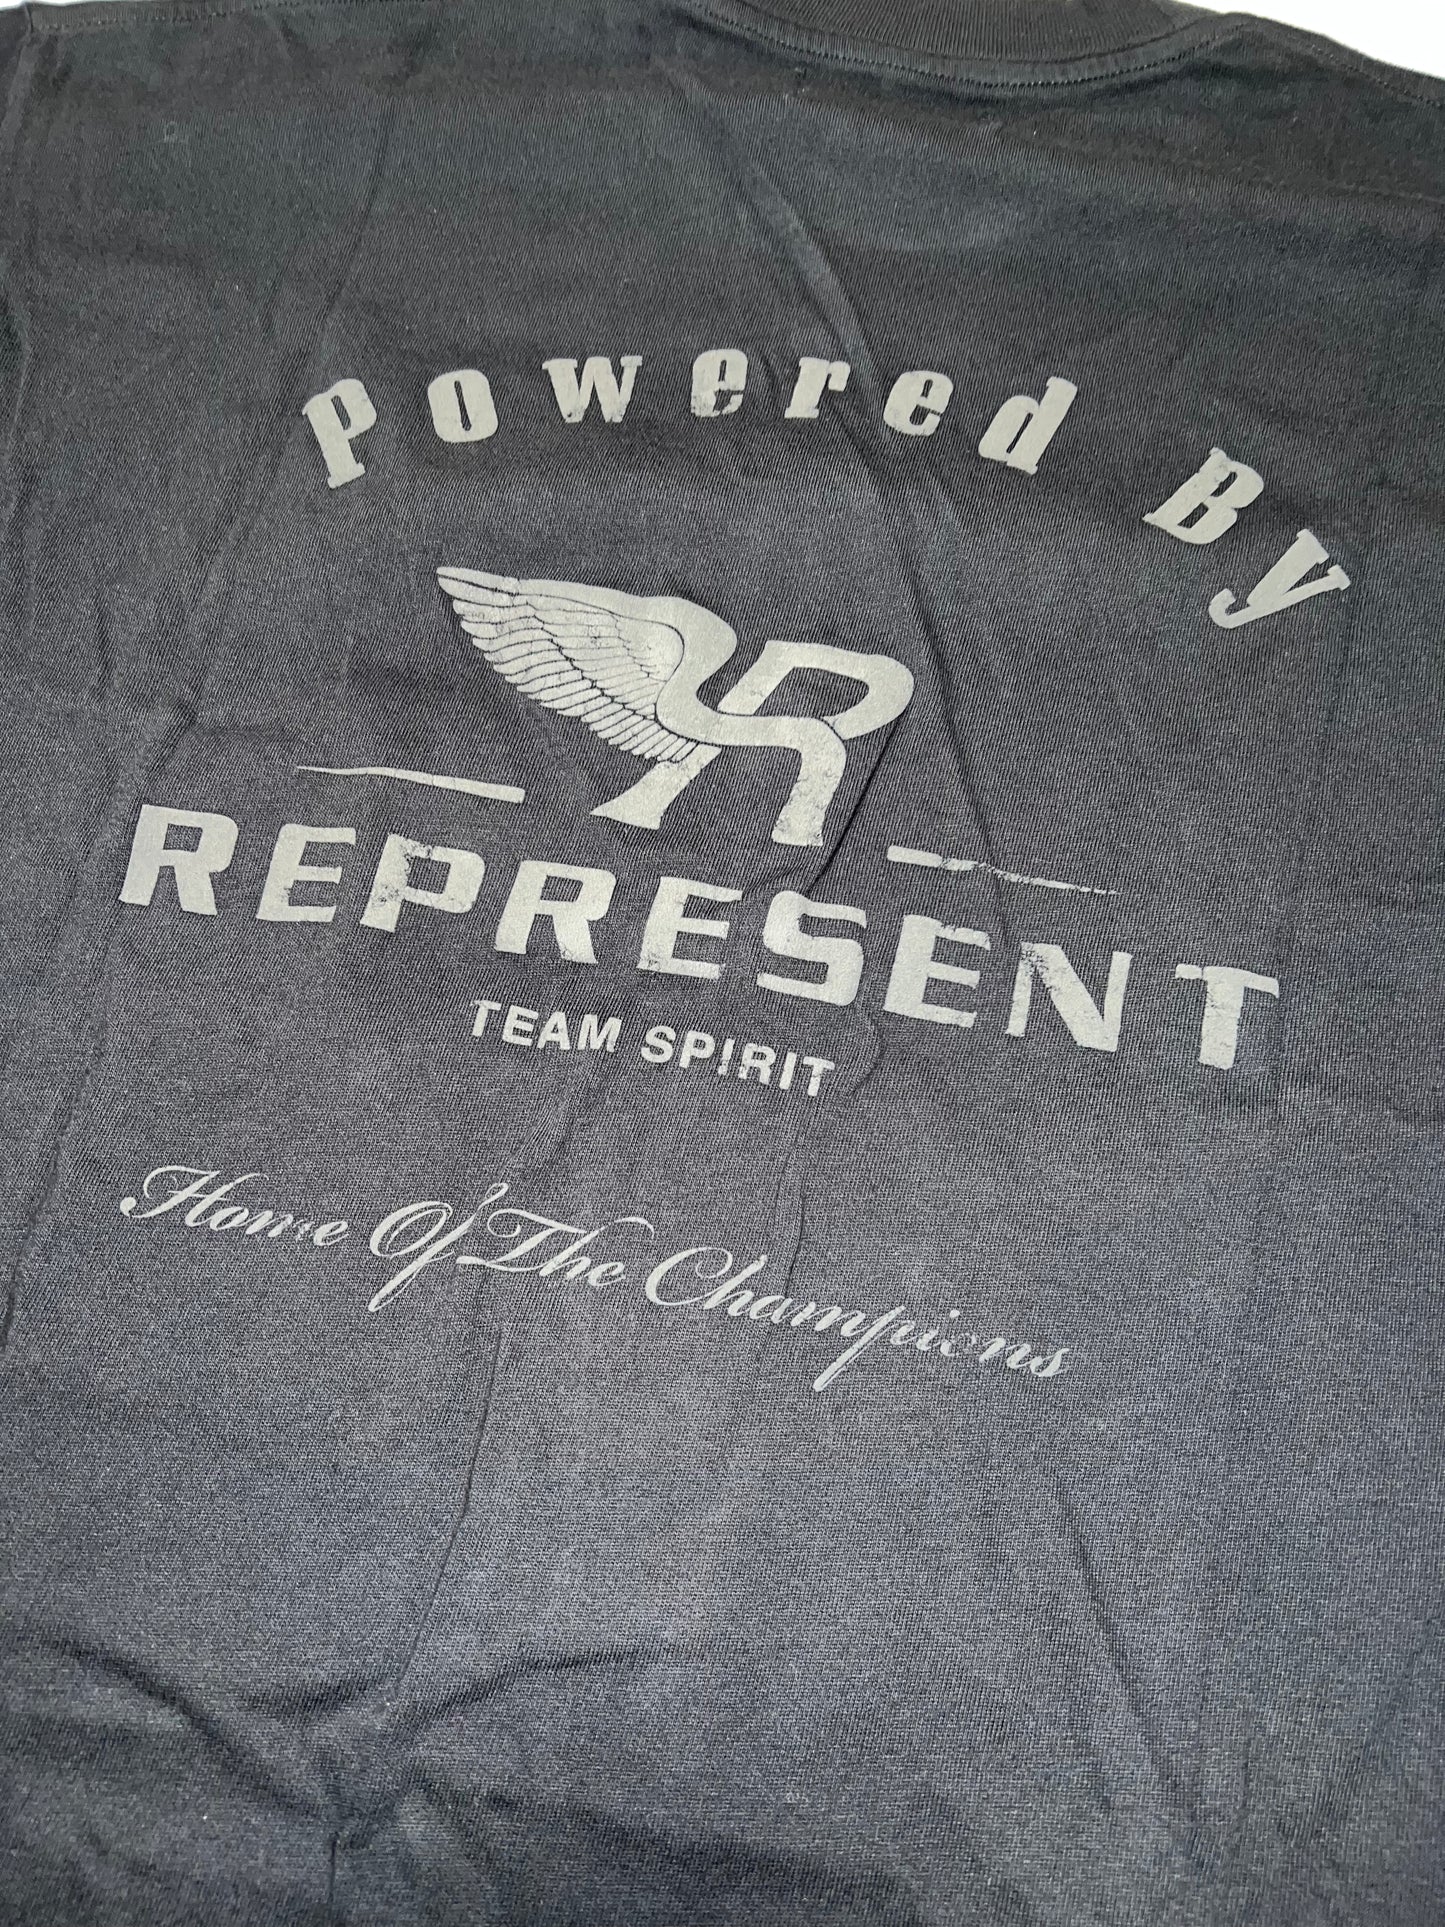 Represent Team Spirit T-shirt